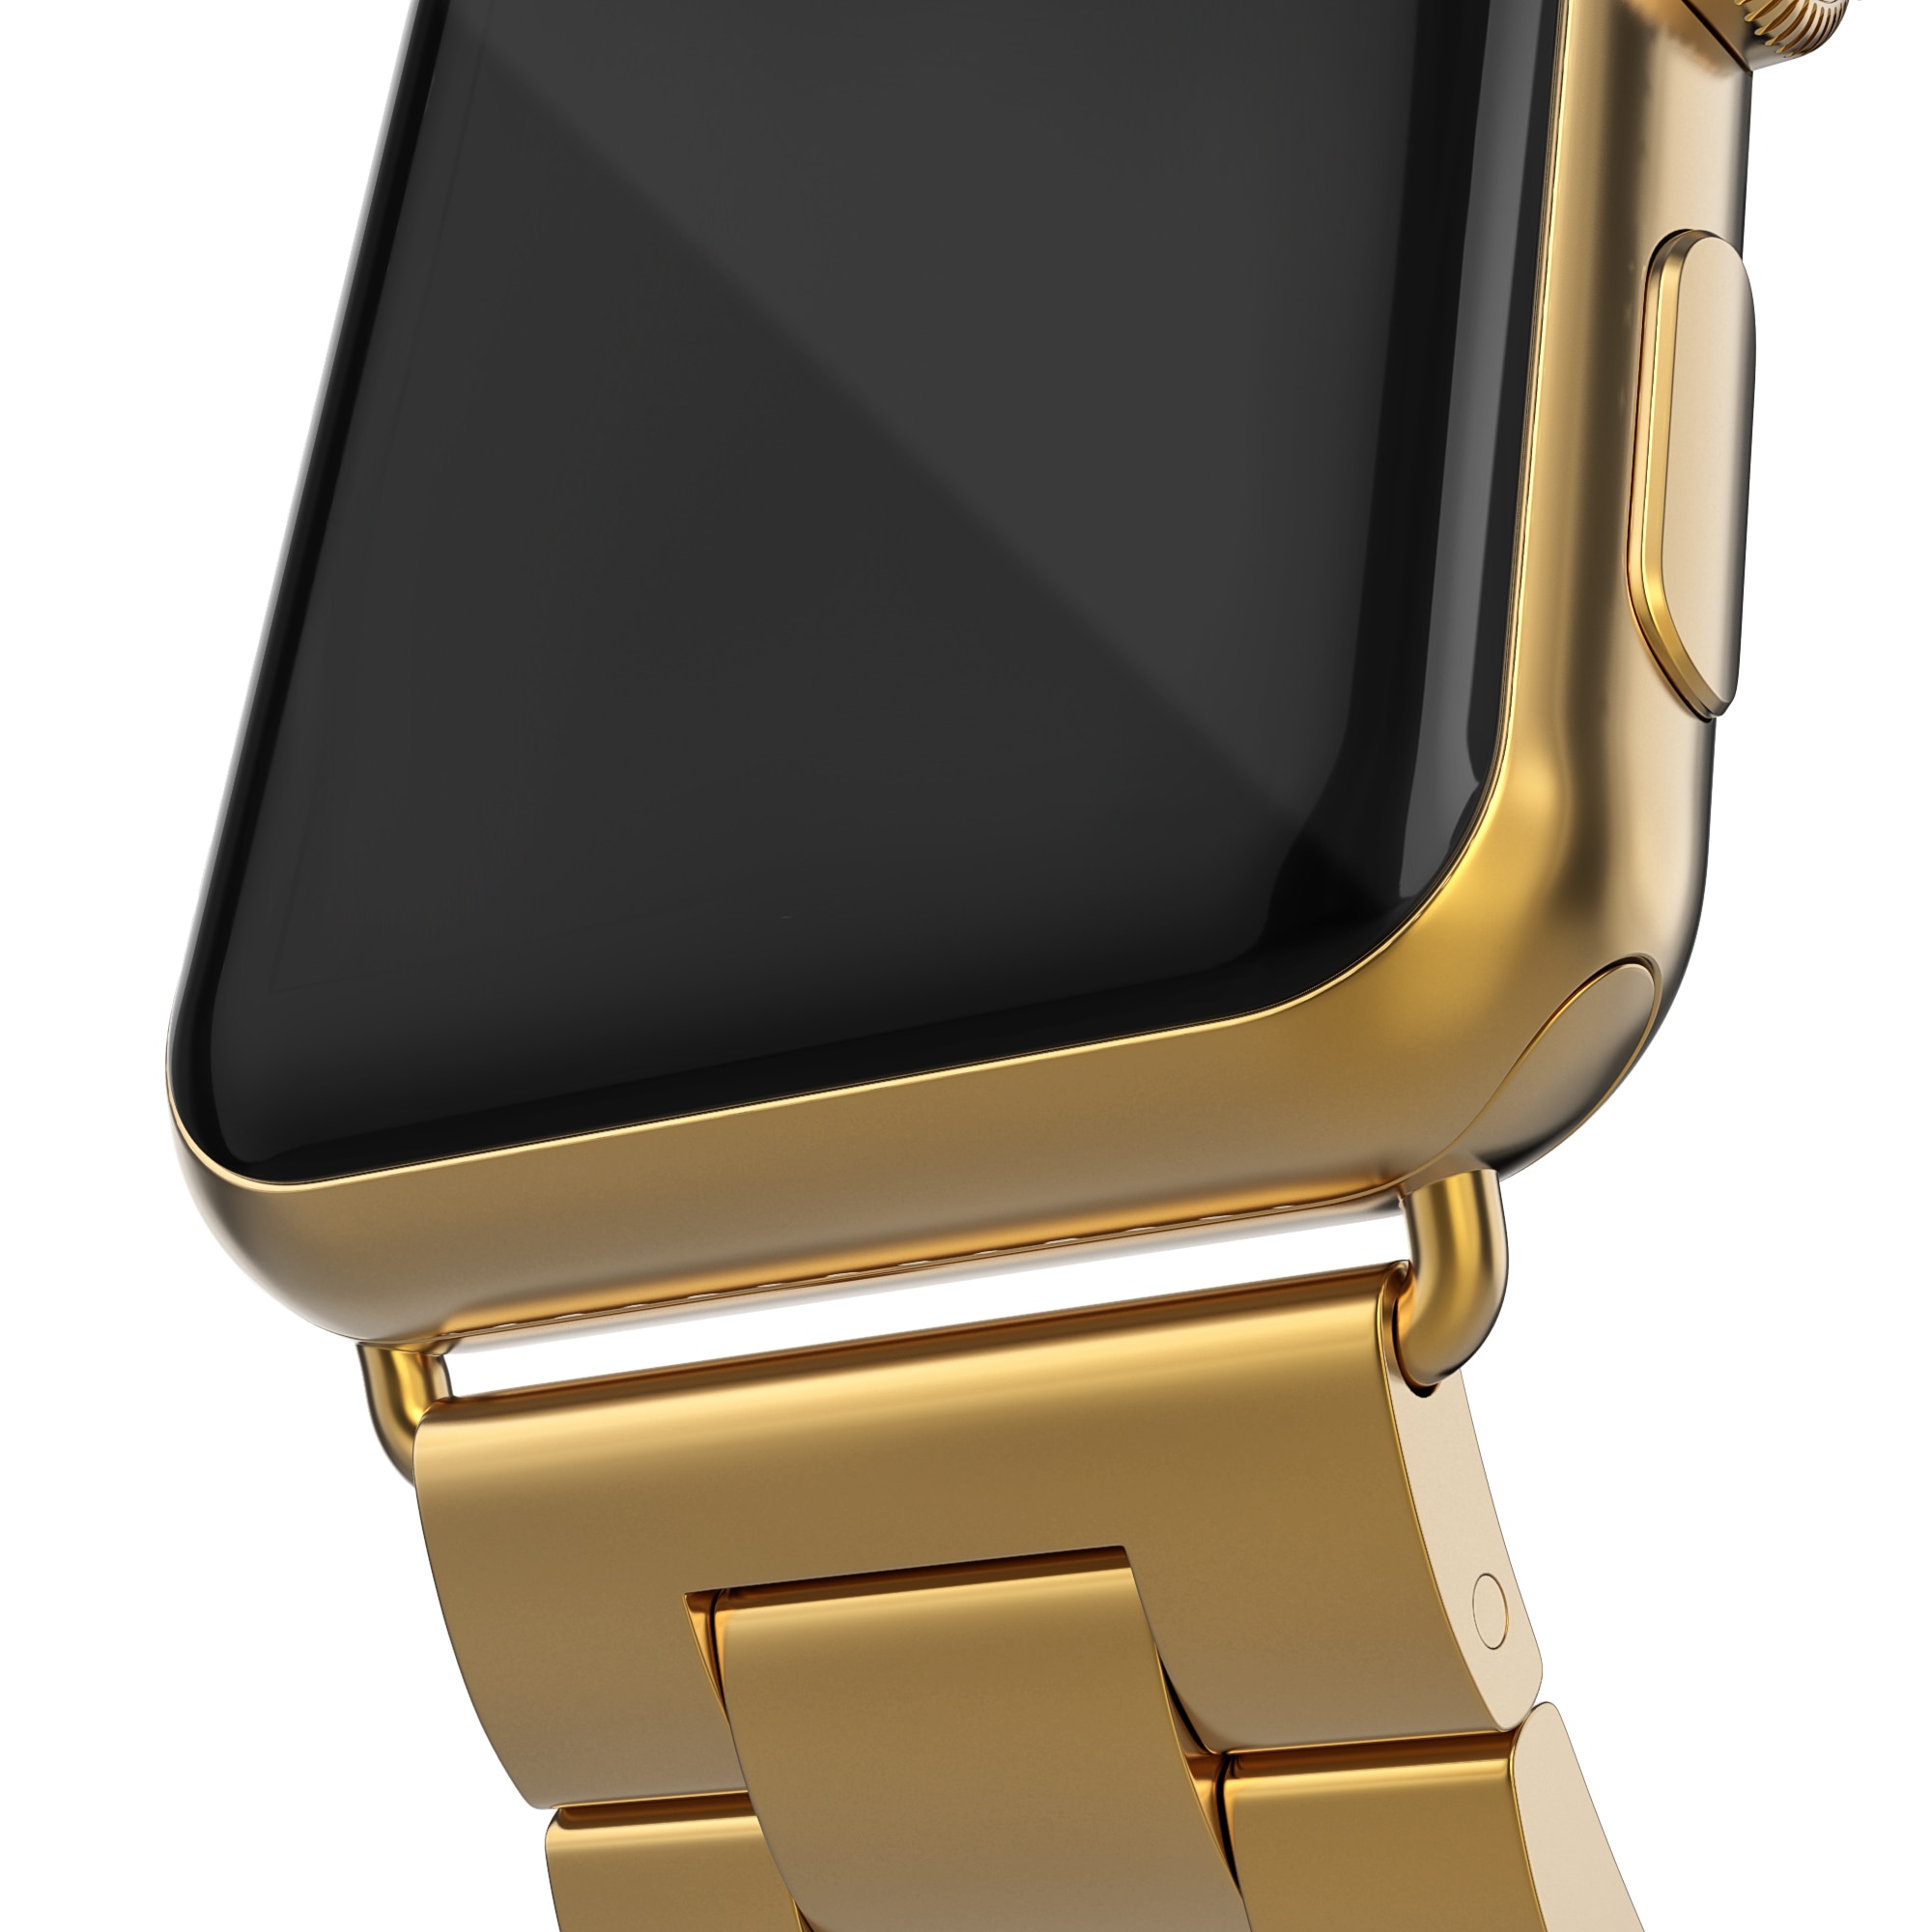 Apple Watch Ultra 2 49mm Metalen Armband goud